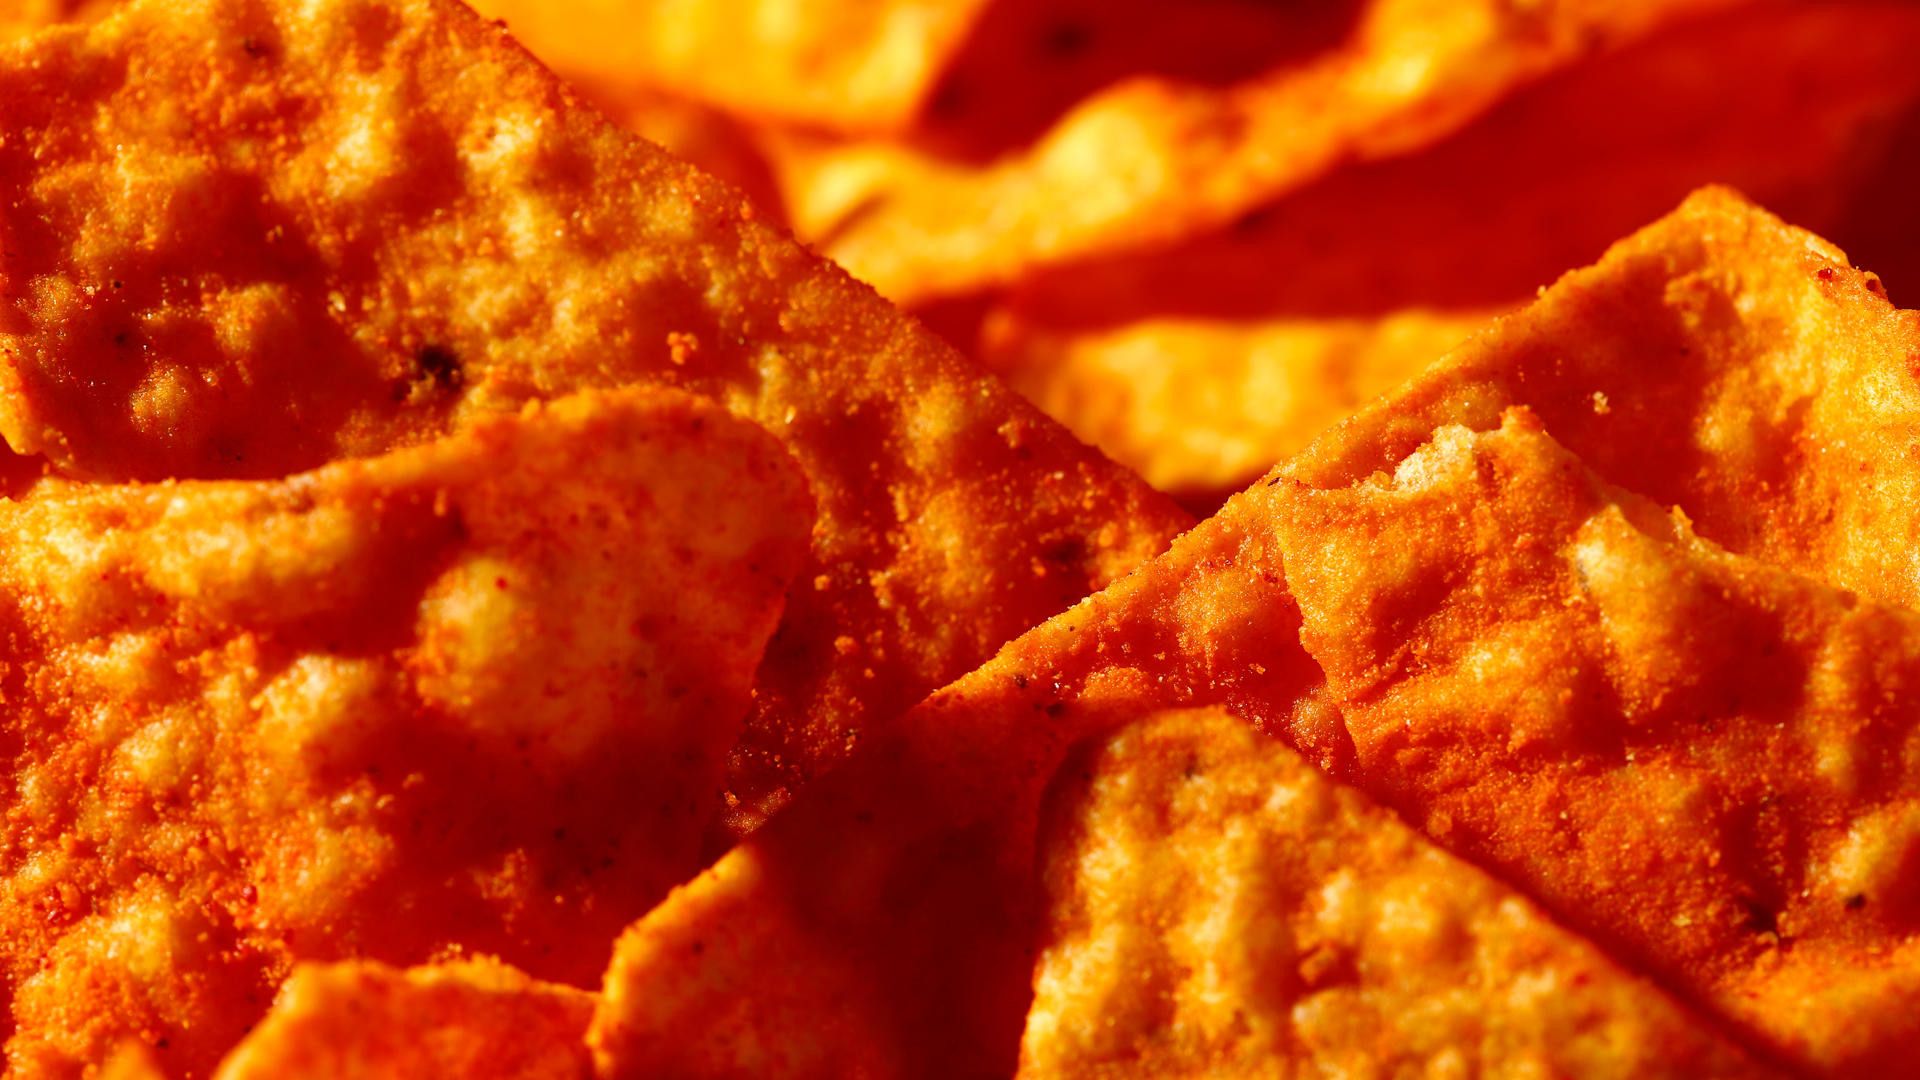 A close up of some orange chips - Doritos